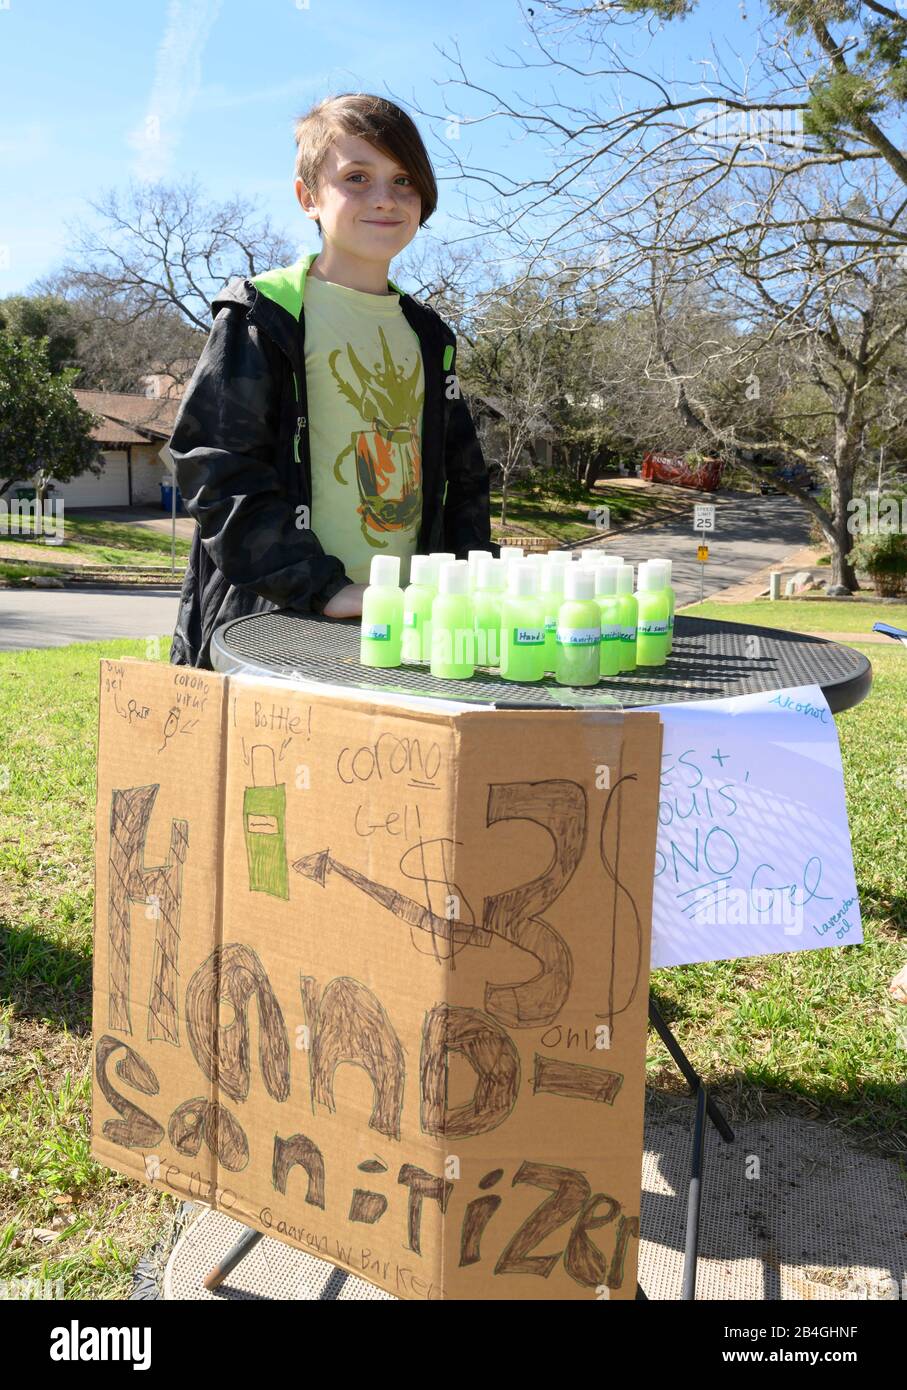 Le stand de désinfectant pour les mains remplace le stand de limonade alors que L'entrepreneur Miles Miller vend de l'aseptisant pour les mains maison pour aider à combattre le coronavirus à 3 $ la bouteille dans son Austin, Texas, quartier après l'école. Banque D'Images